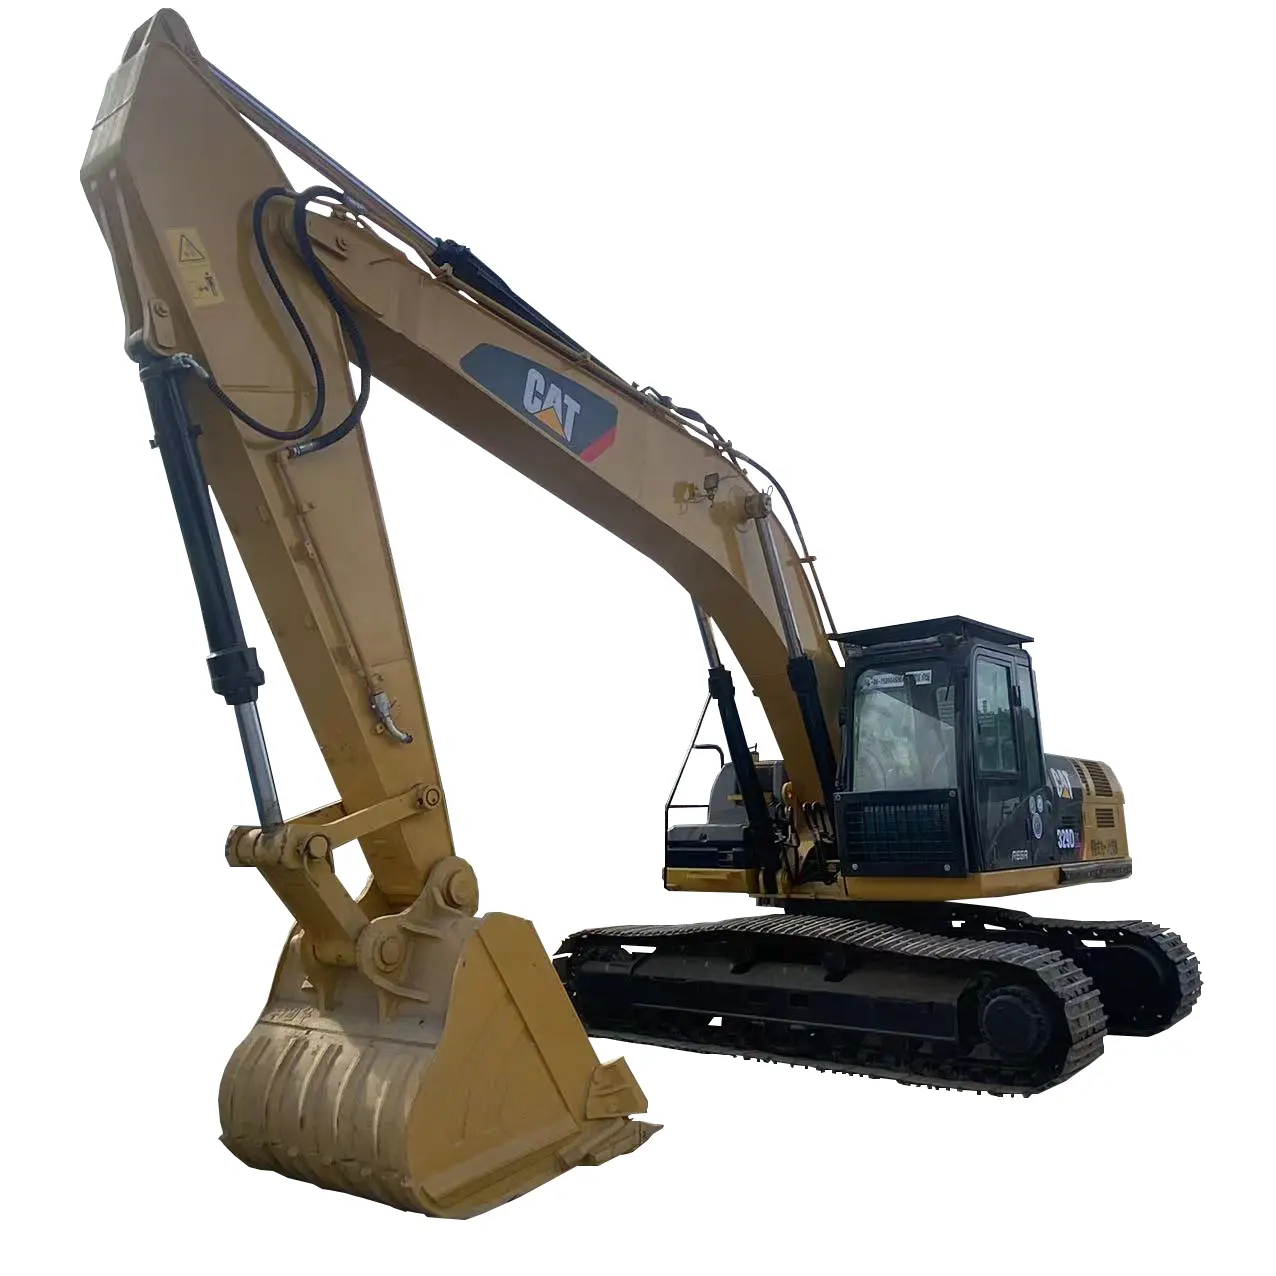 Vendi bene nuovo tipo cat 329 d2l 330d2l escavatore usato vendita a buon mercato